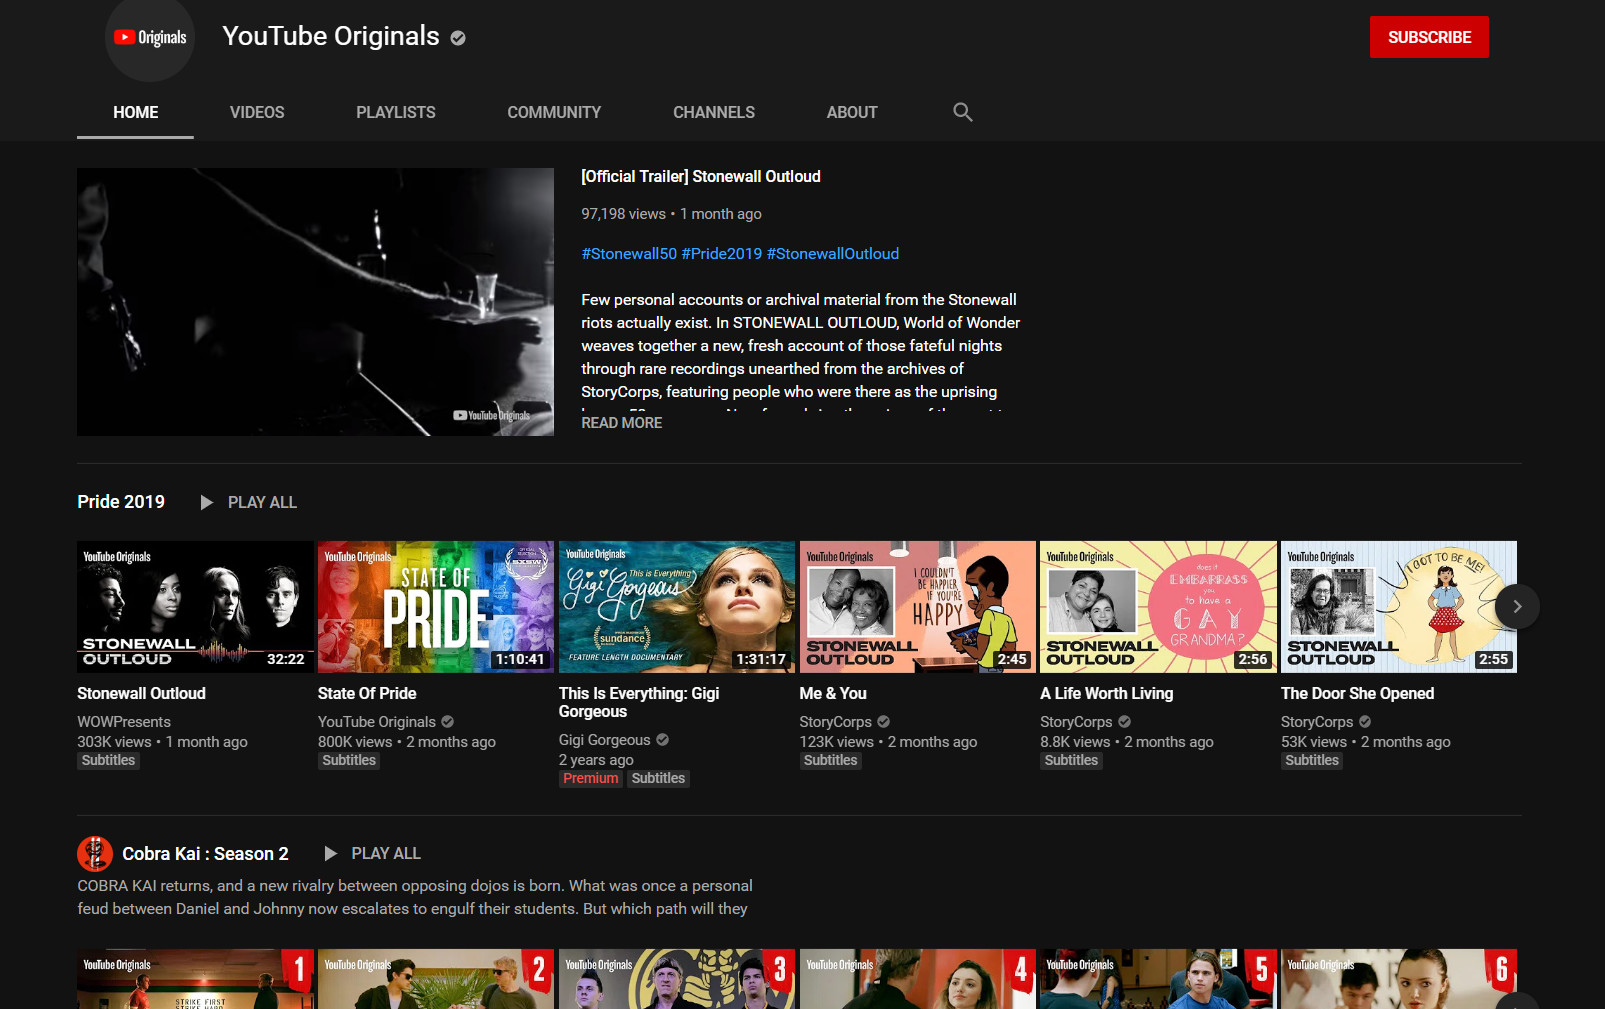 Người dùng sẽ có thể truy cập YouTube Originals miễn phí từ ngày 24/09